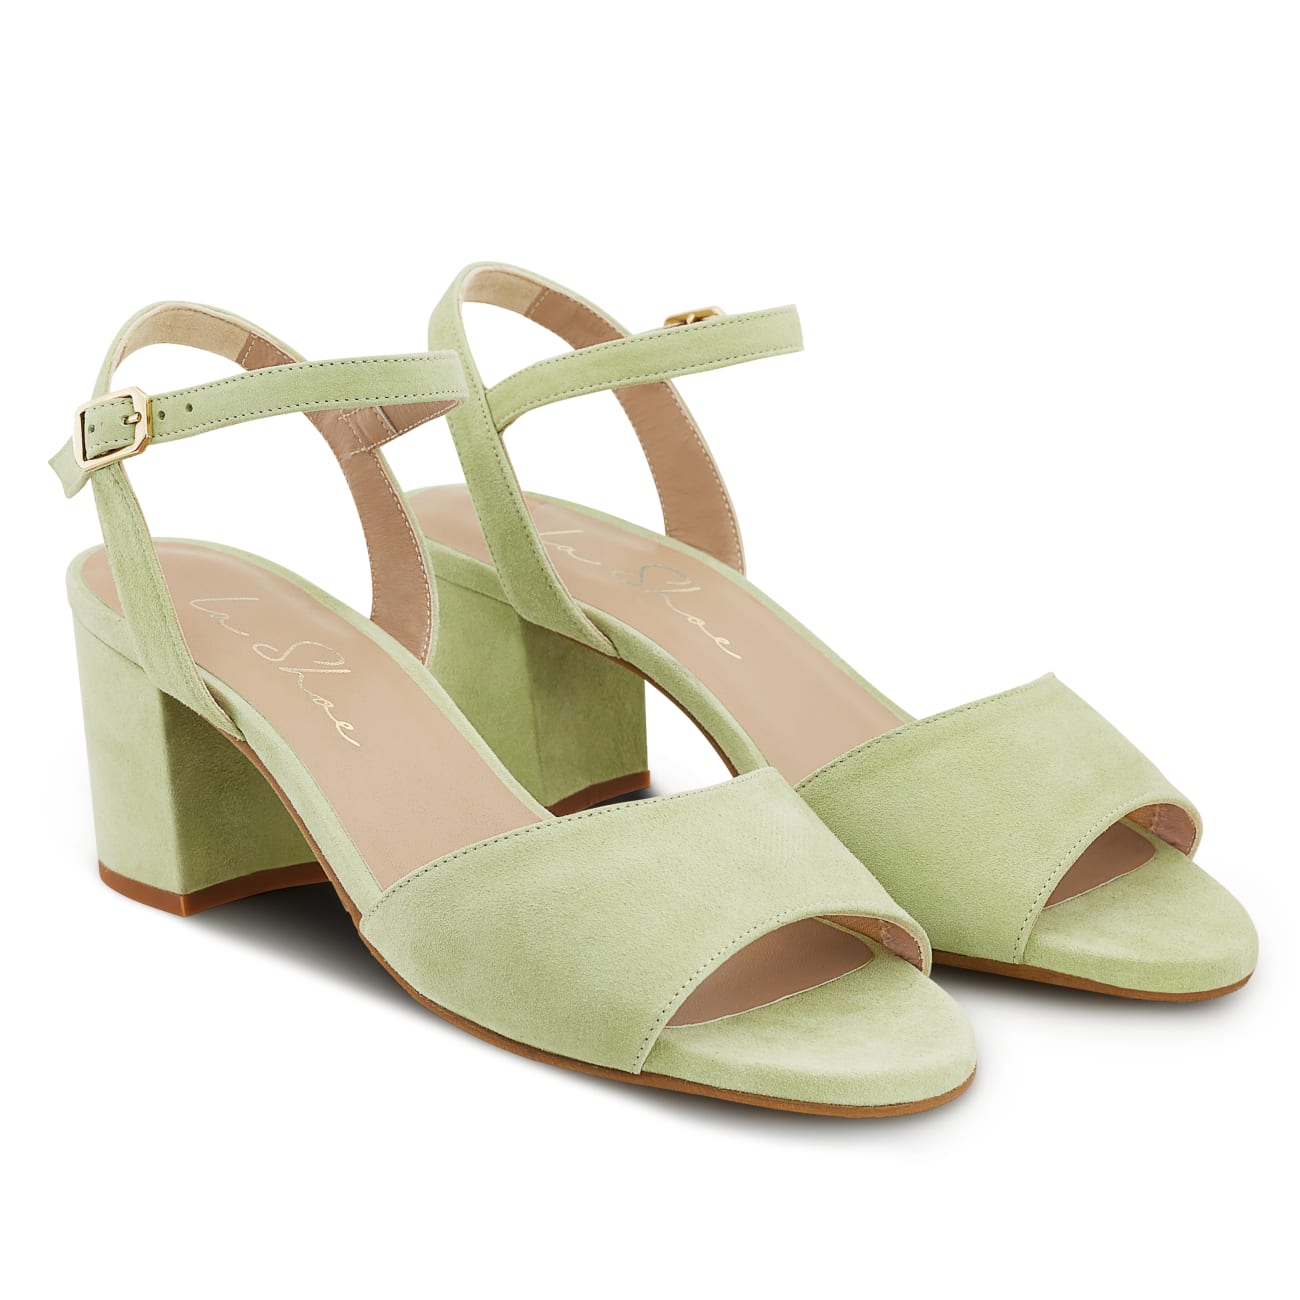 Sandale Classy Hellgrün – modischer und bequemer Schuh für Hallux valgus und empfindliche Füße von LaShoe.de